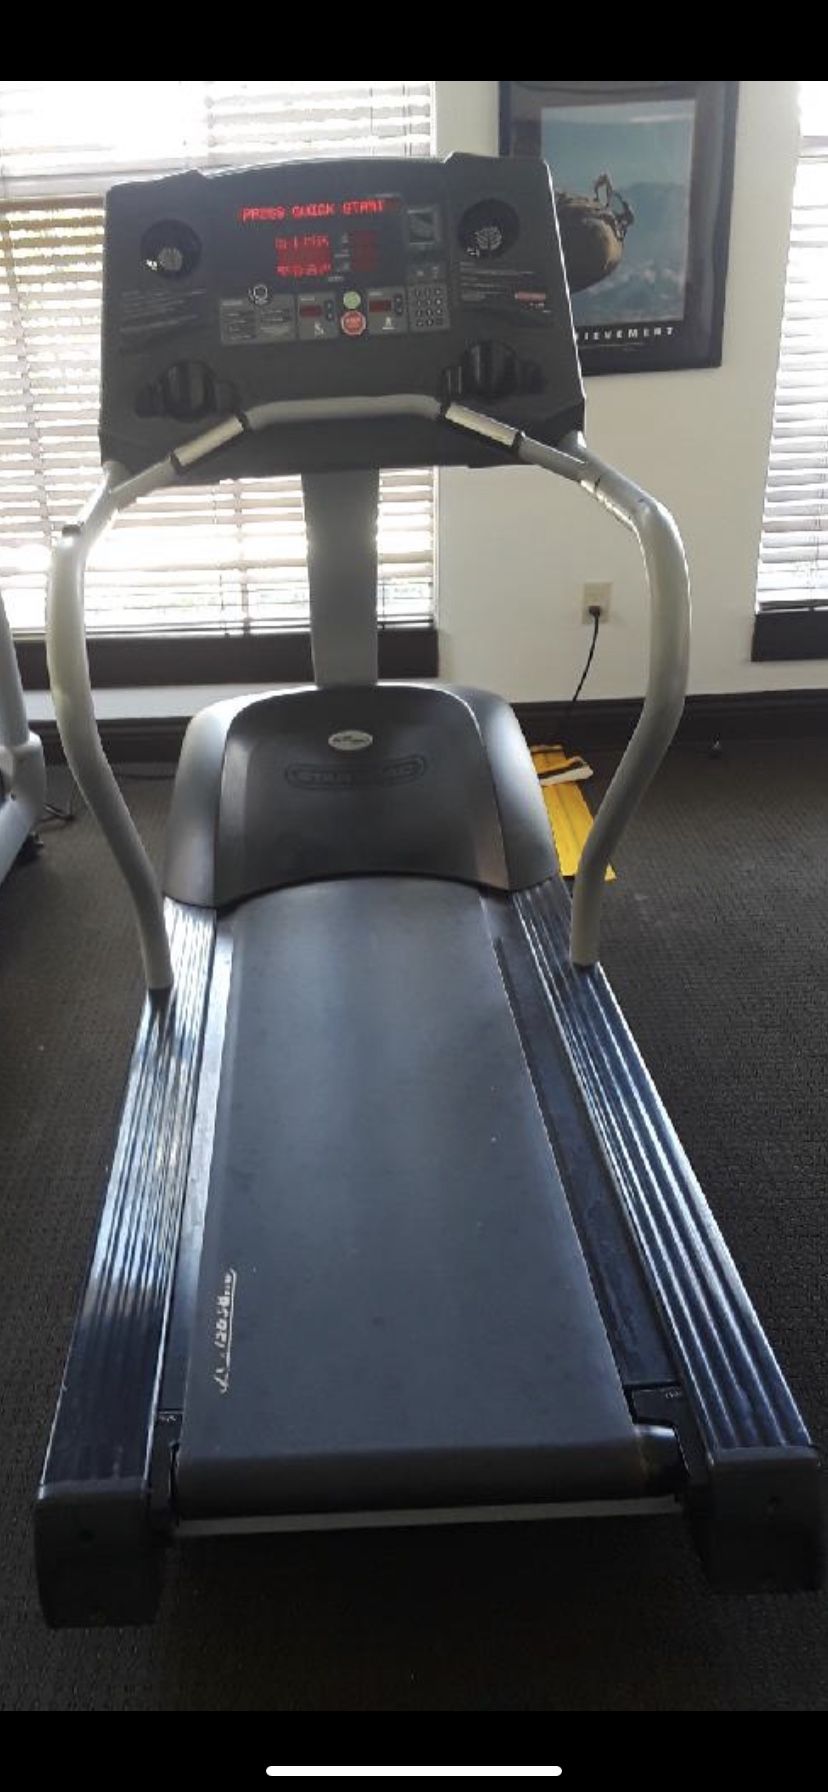 Star trac treadmill